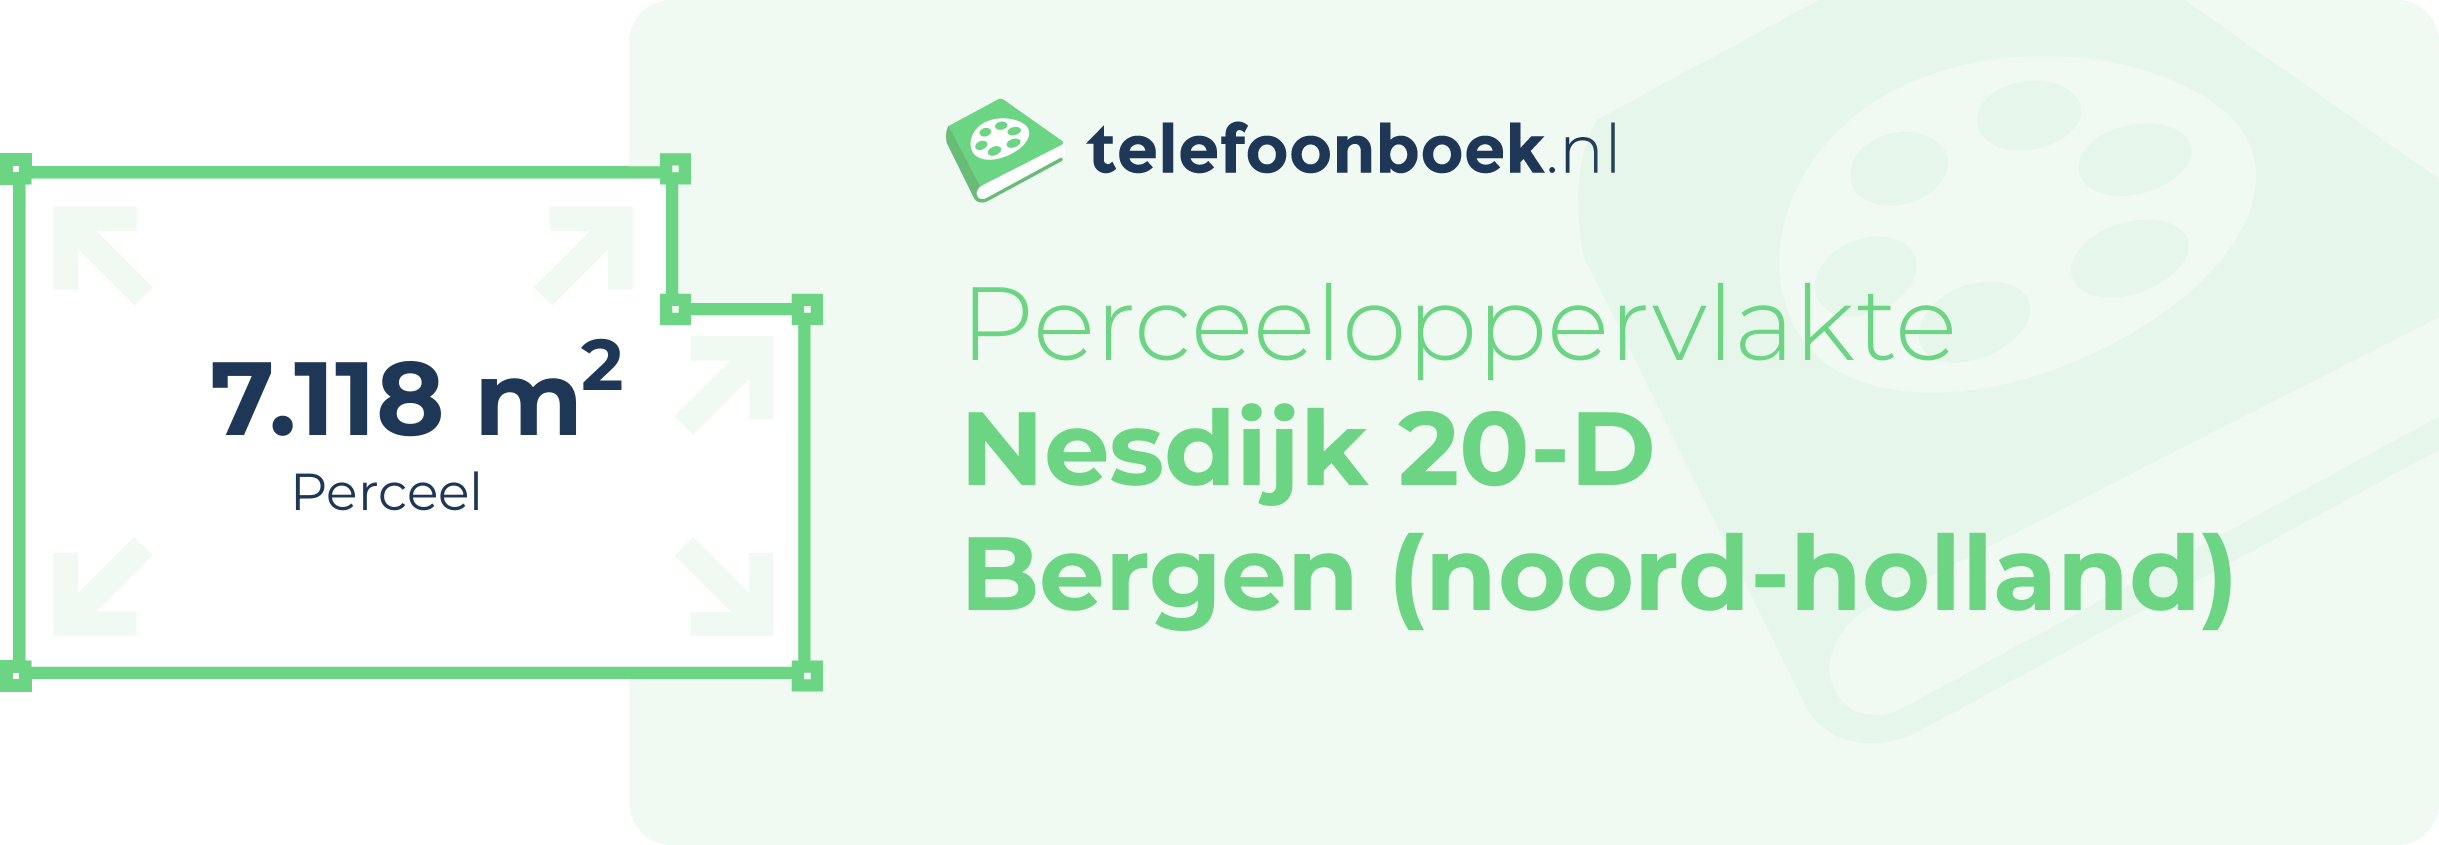 Perceeloppervlakte Nesdijk 20-D Bergen (Noord-Holland)